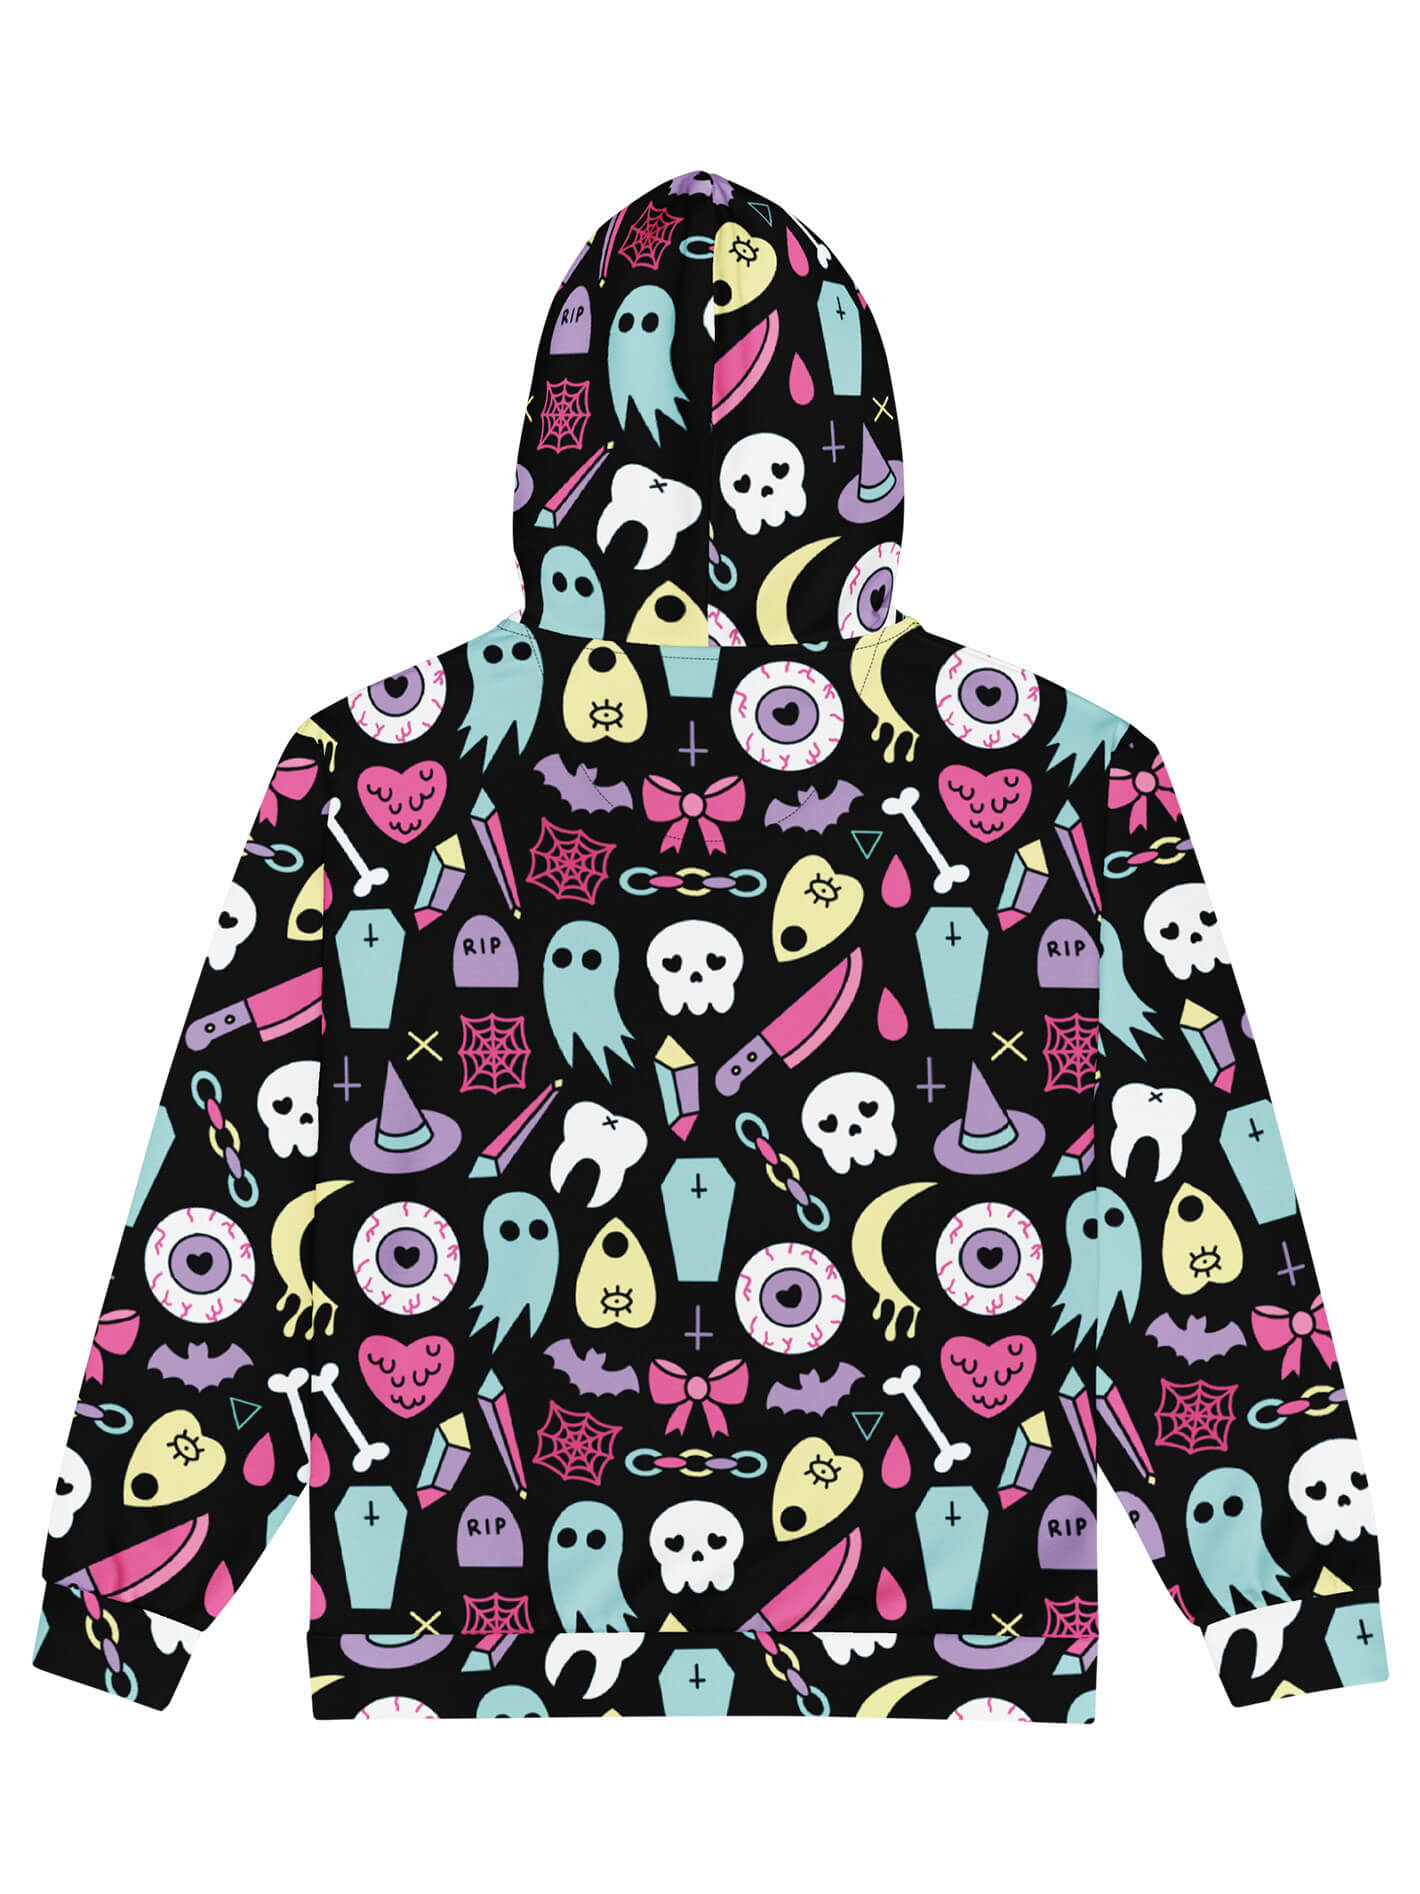 Plus size creepy cute zip up hoodie.